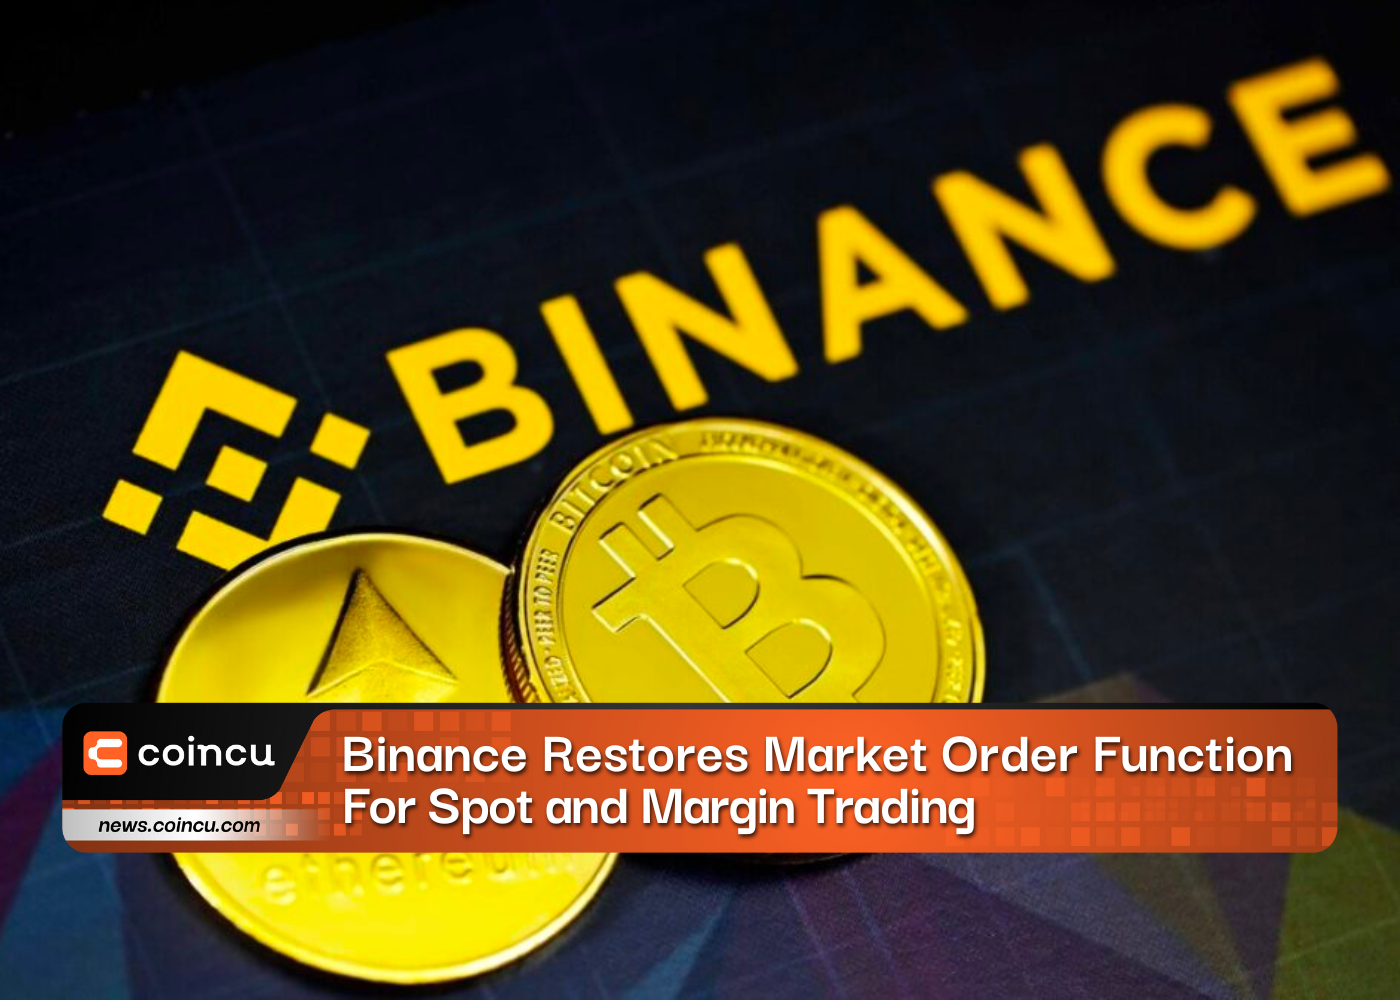 Binance Restores Market Order Function